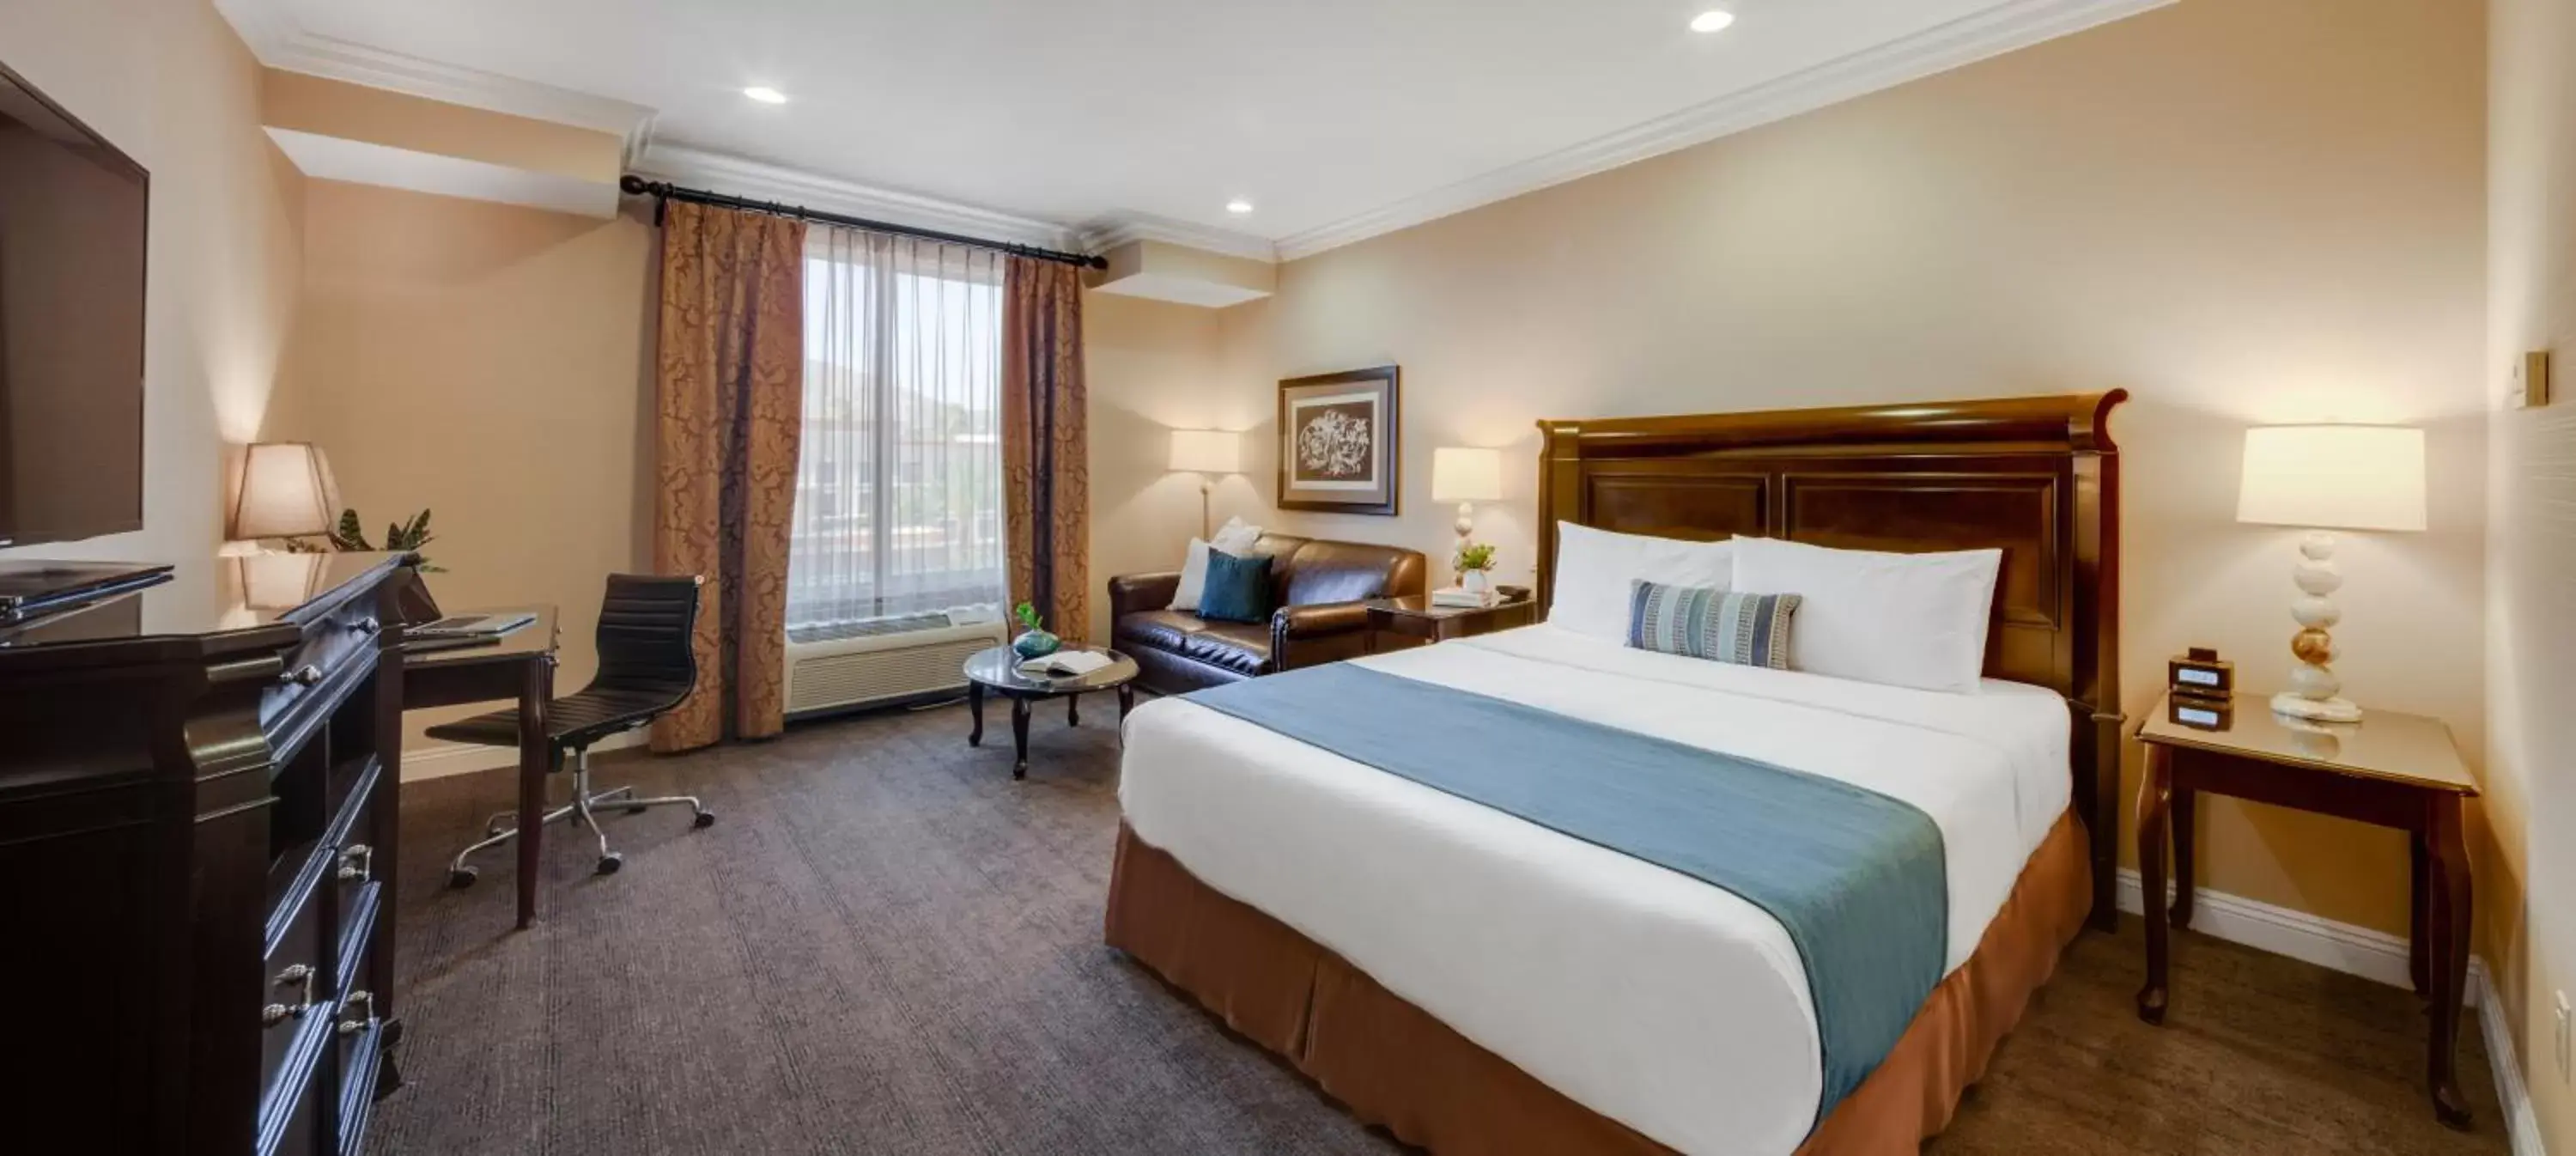 Bedroom in Ayres Hotel & Spa Moreno Valley/Riverside